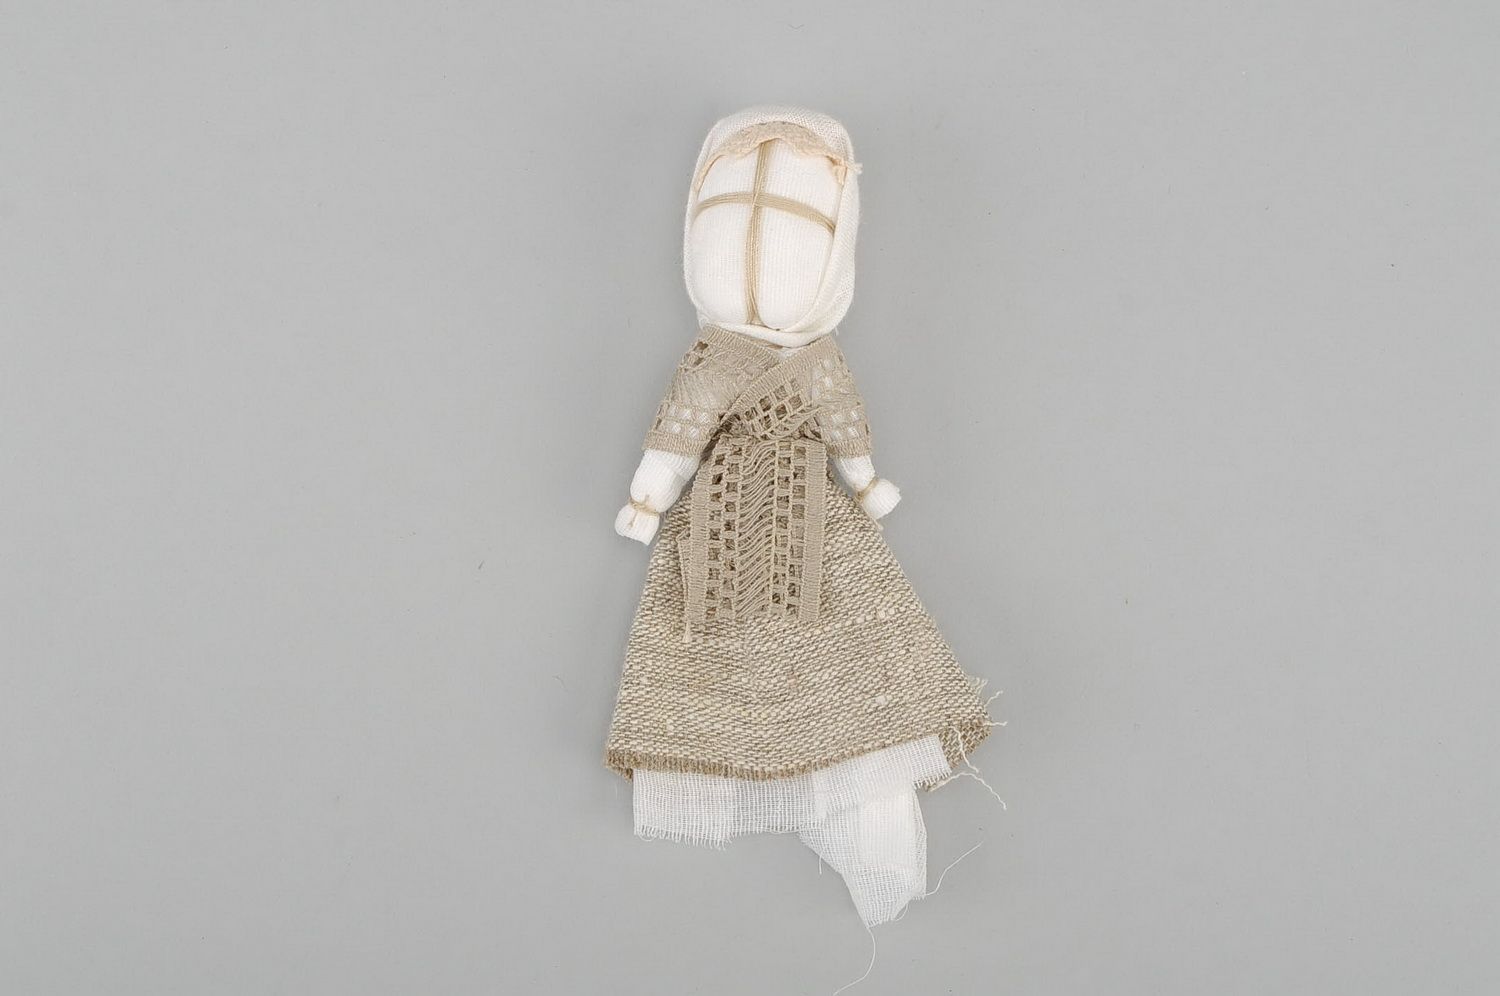 Bambola etnica di stoffa fatta a mano amuleto talismano giocattolo slavo  foto 3